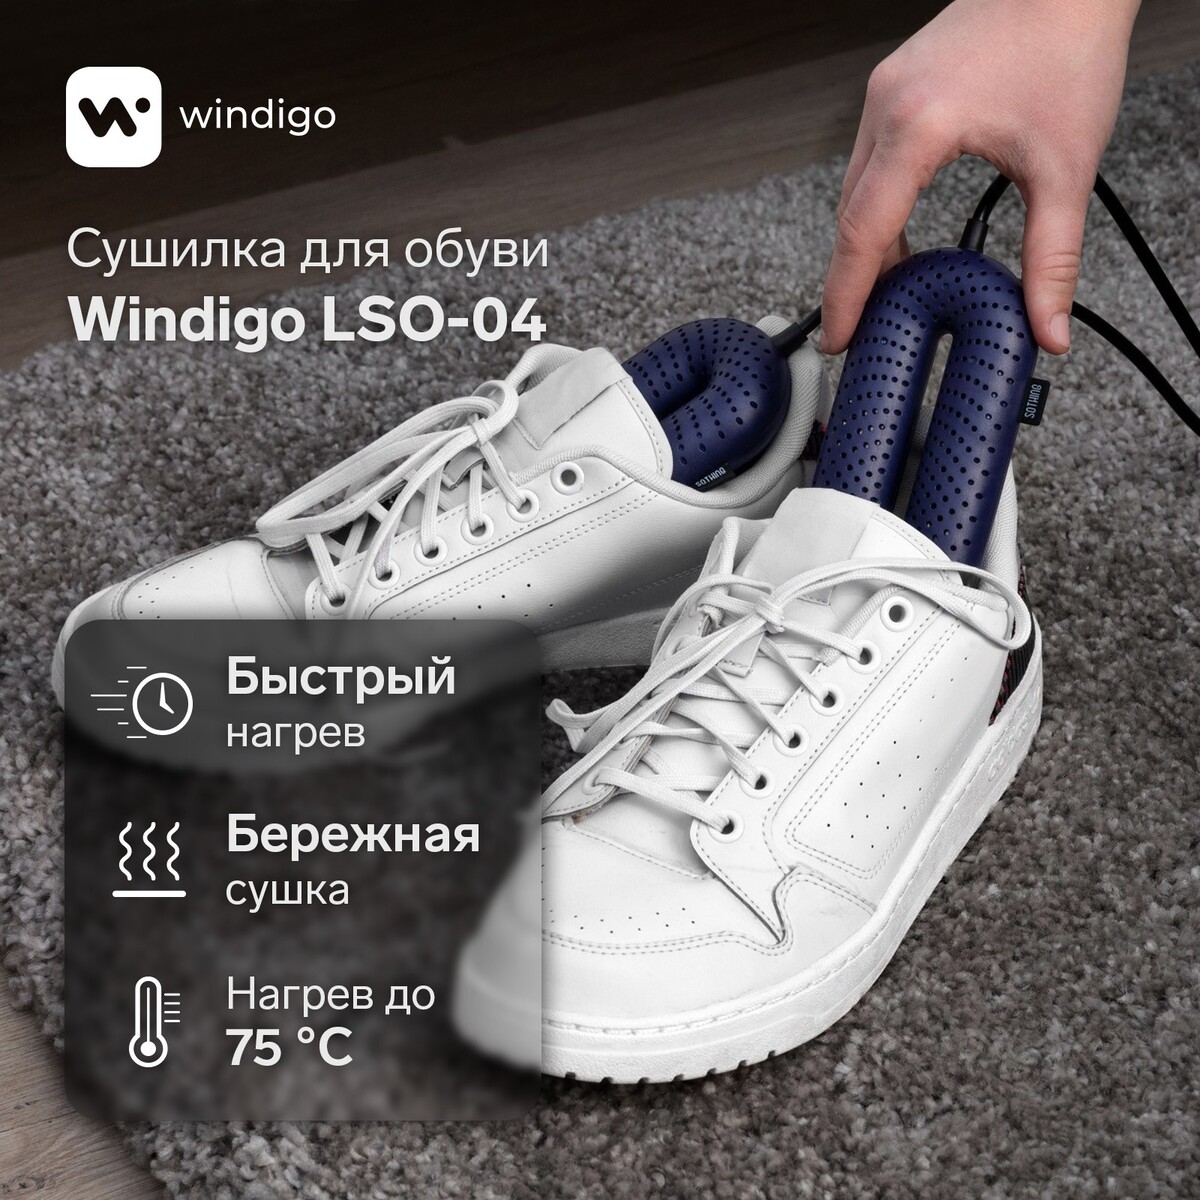 Сушилка для обуви windigo lso-04, 17 см, 20 вт, индикатор, синяя